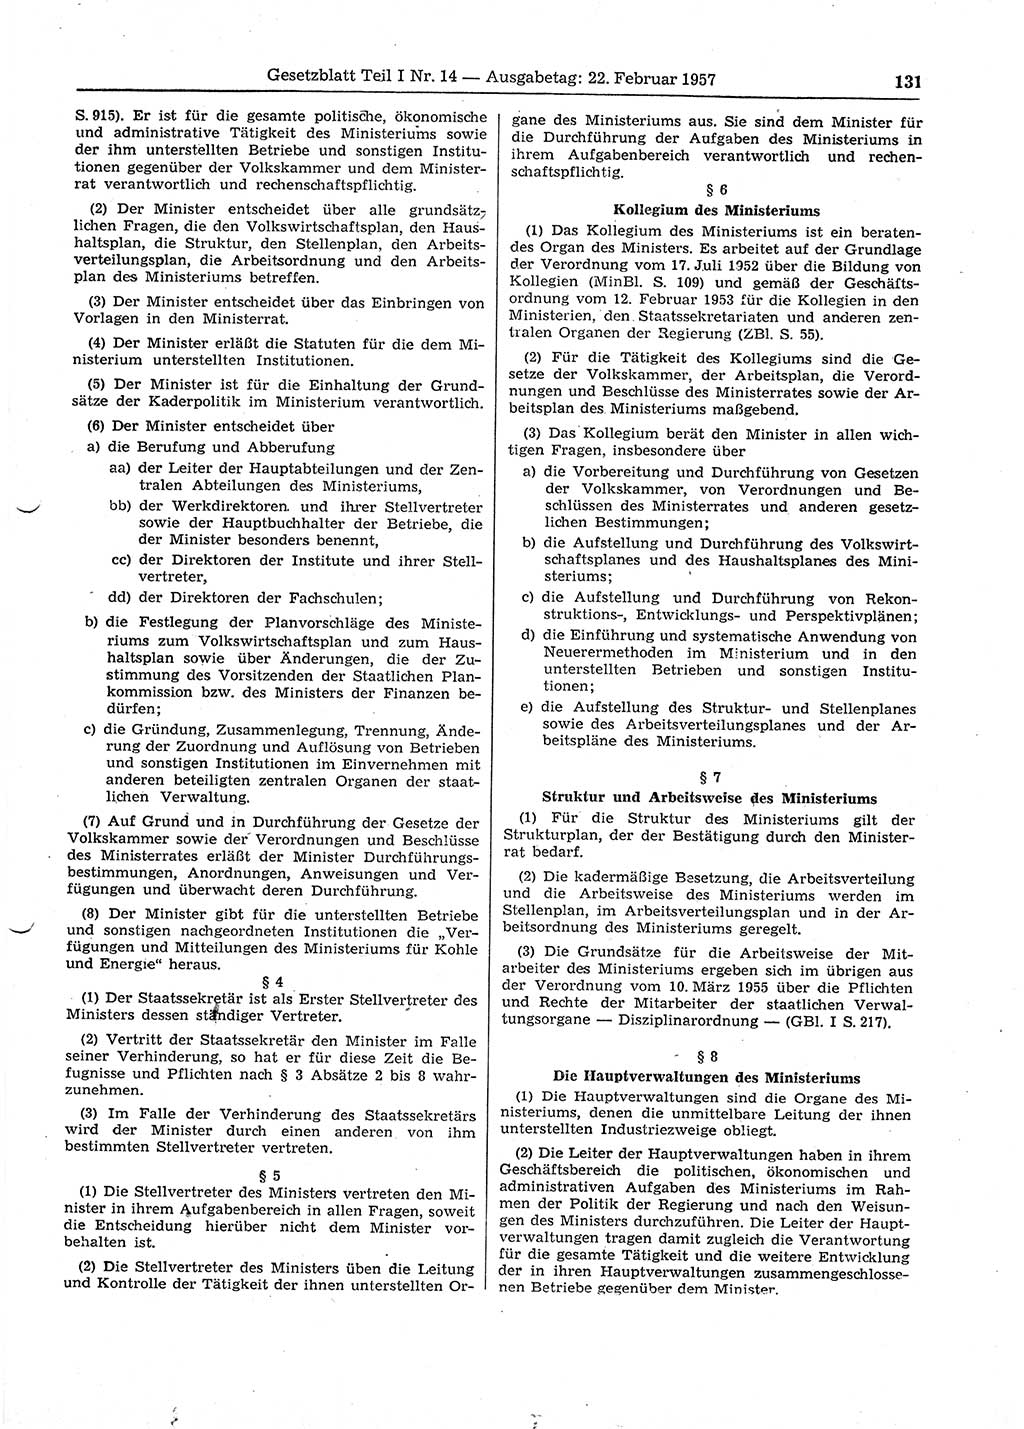 Gesetzblatt (GBl.) der Deutschen Demokratischen Republik (DDR) Teil Ⅰ 1957, Seite 131 (GBl. DDR Ⅰ 1957, S. 131)